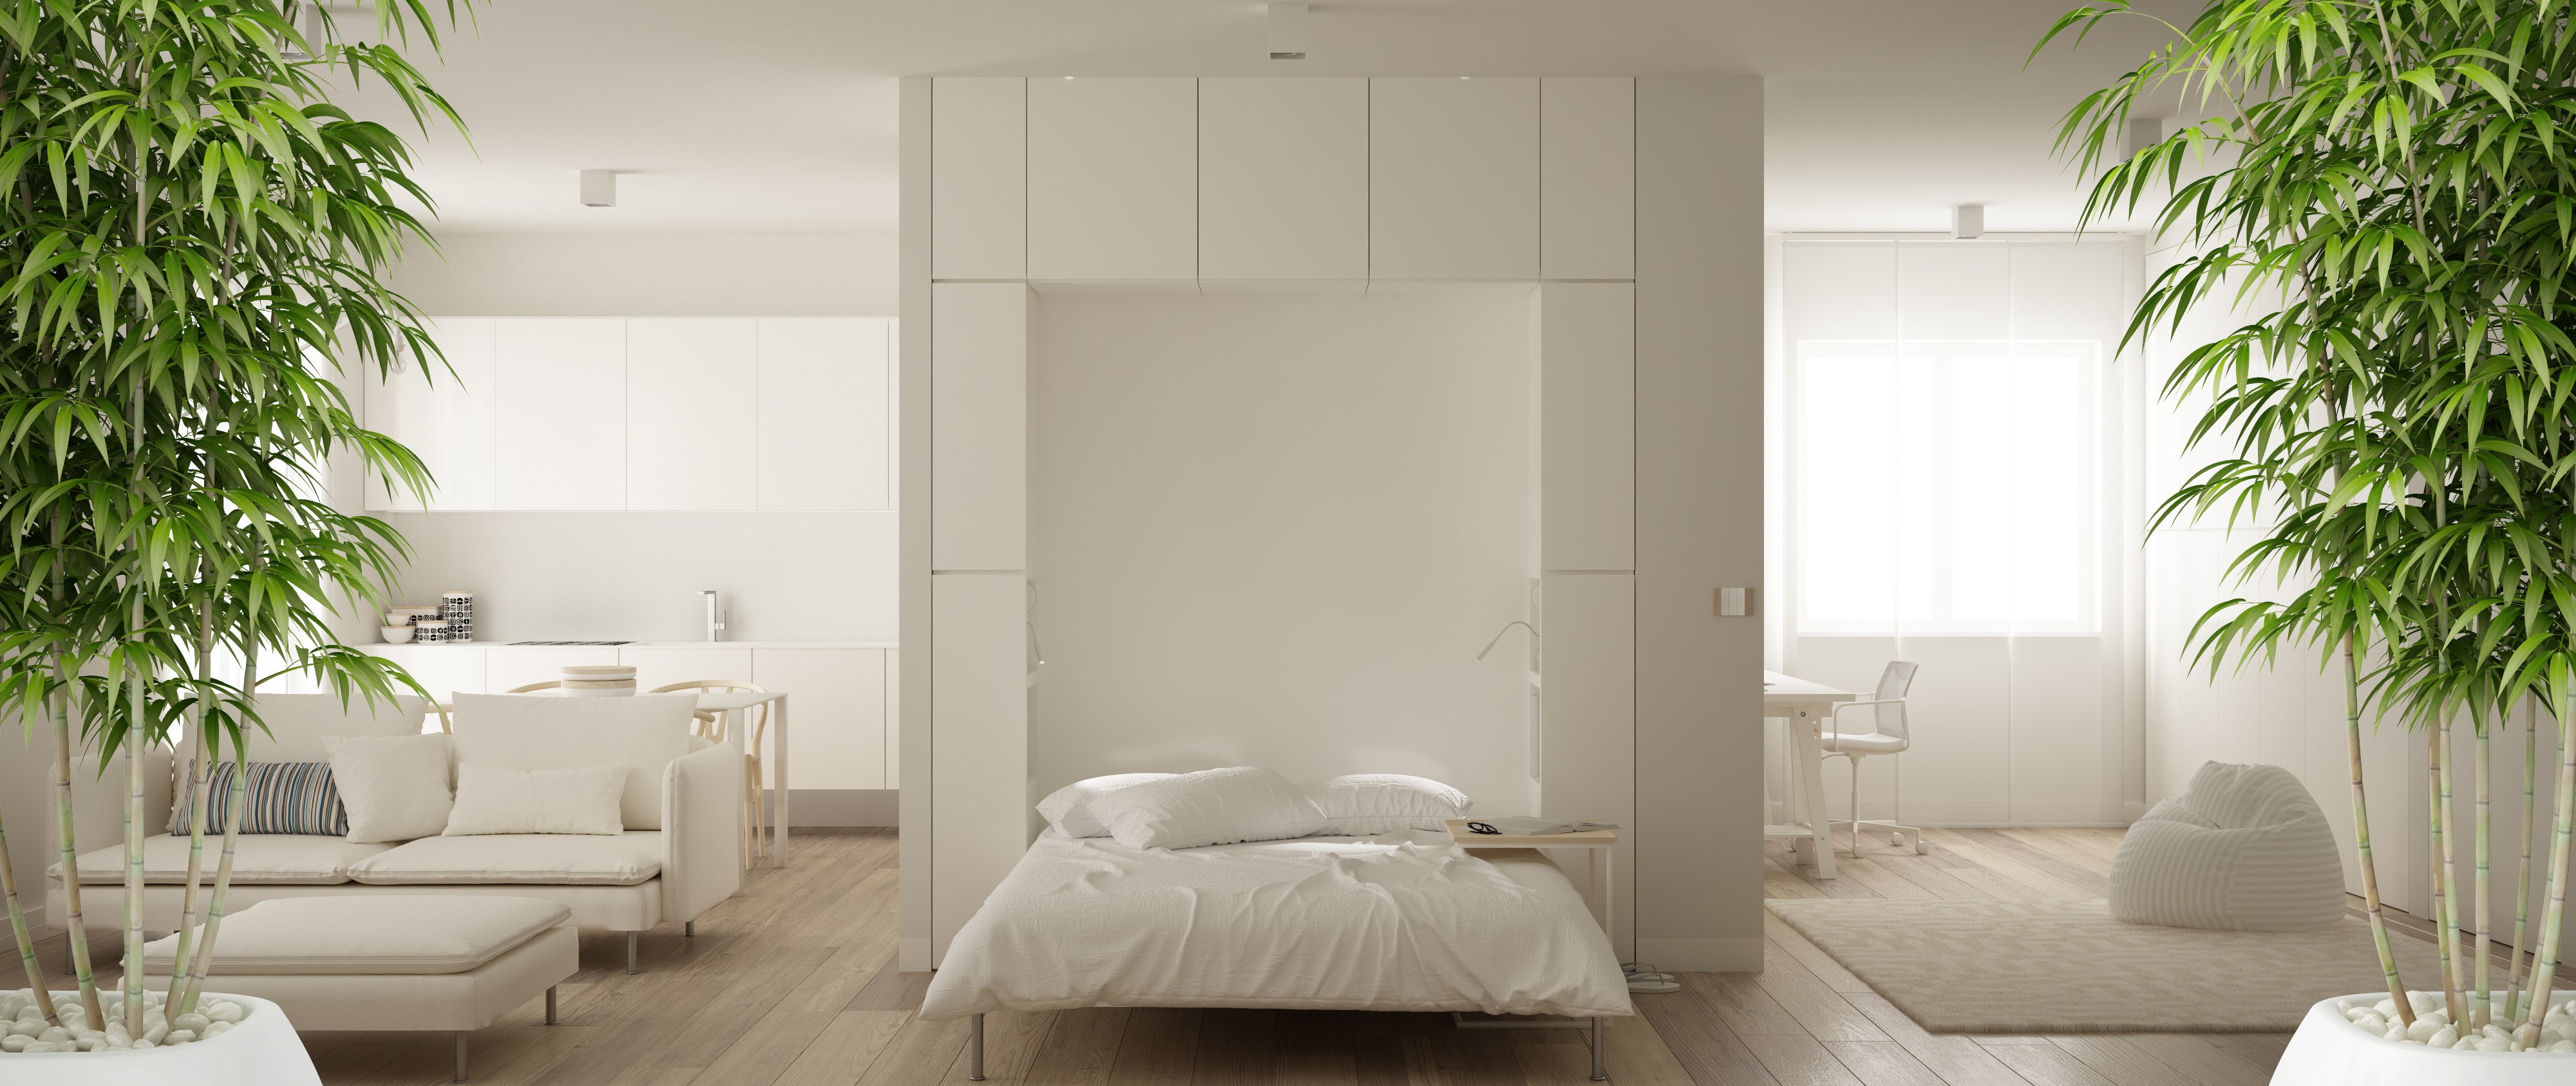 Witte slaapkamer inspiratie Casa Dormi